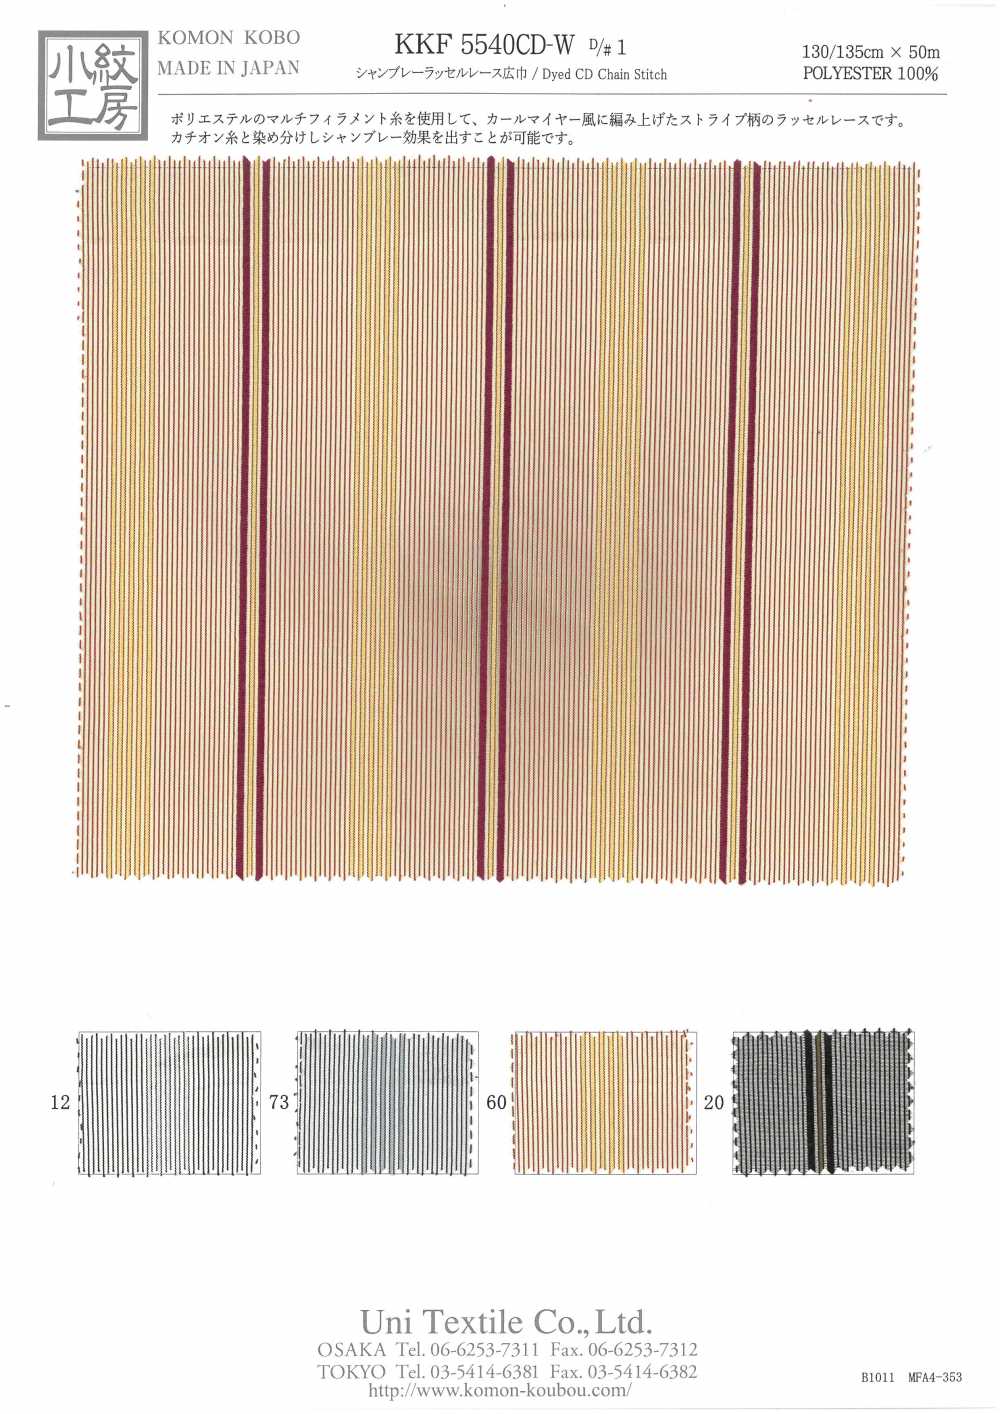 KKF5540CD-W-D/1 Laço Chambray Raschel Largura Larga[Têxtil / Tecido] Uni Textile